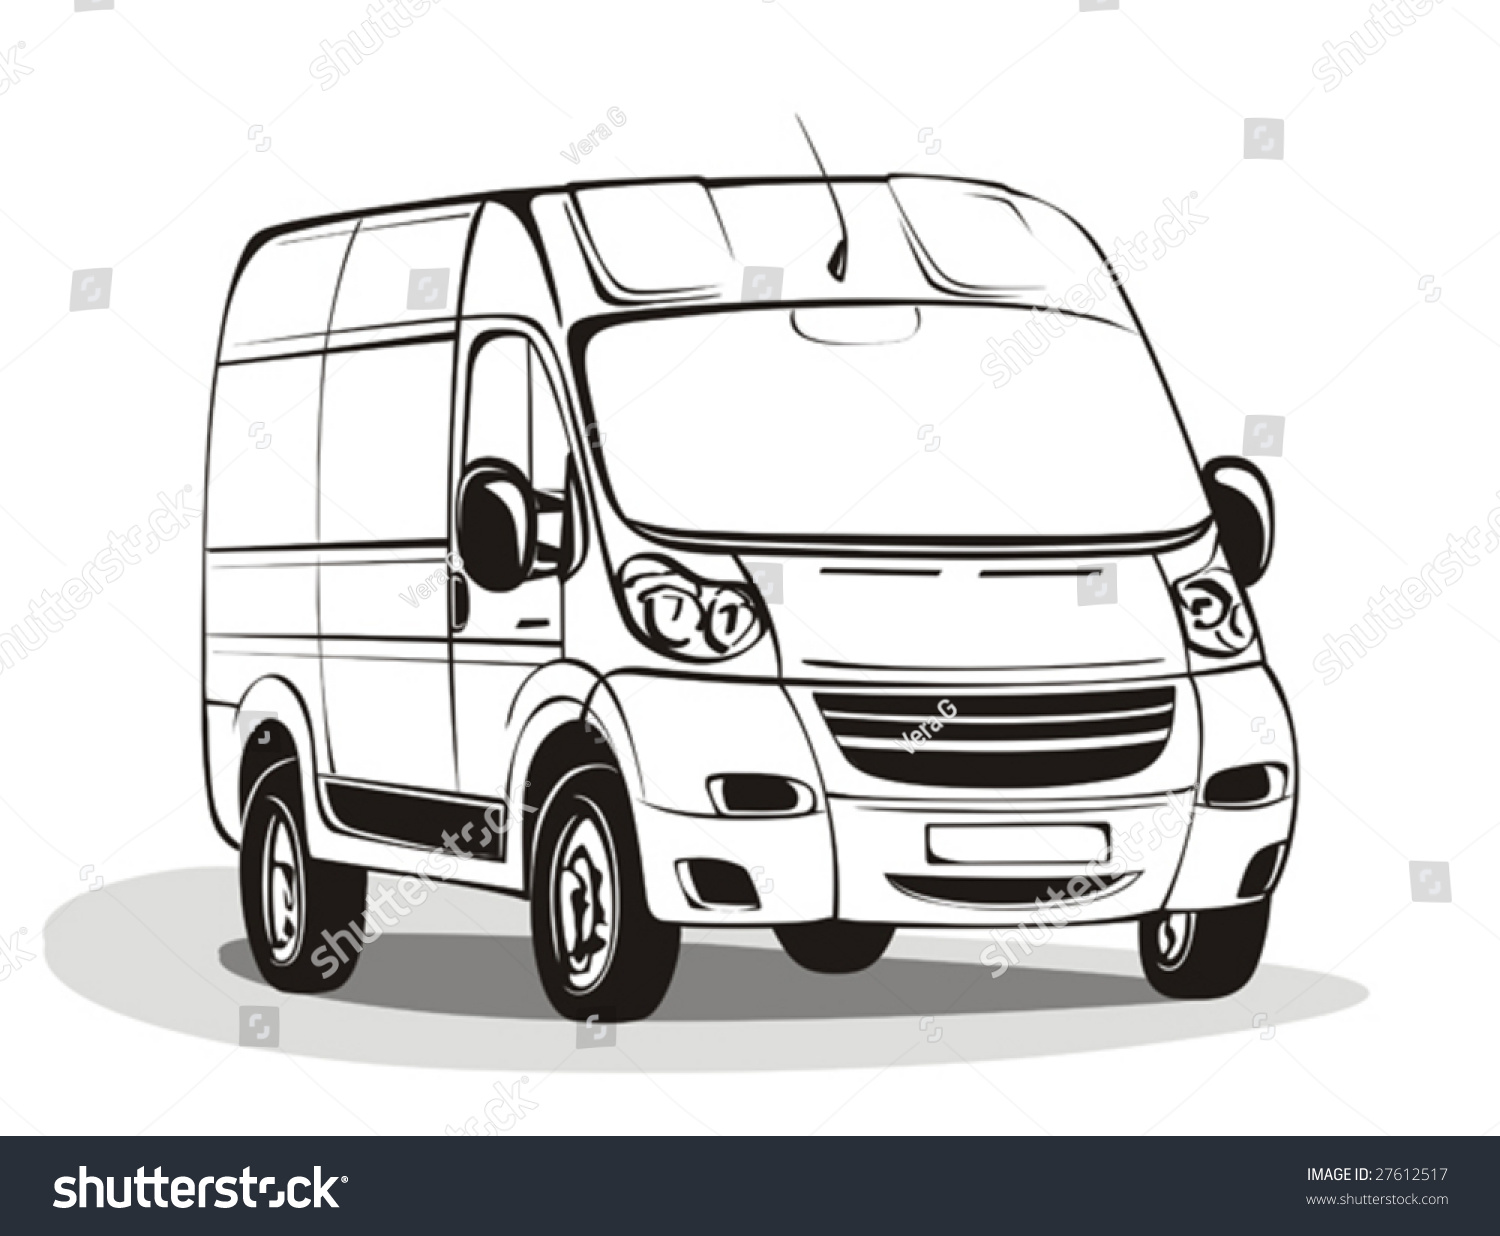 clipart minibus - photo #45